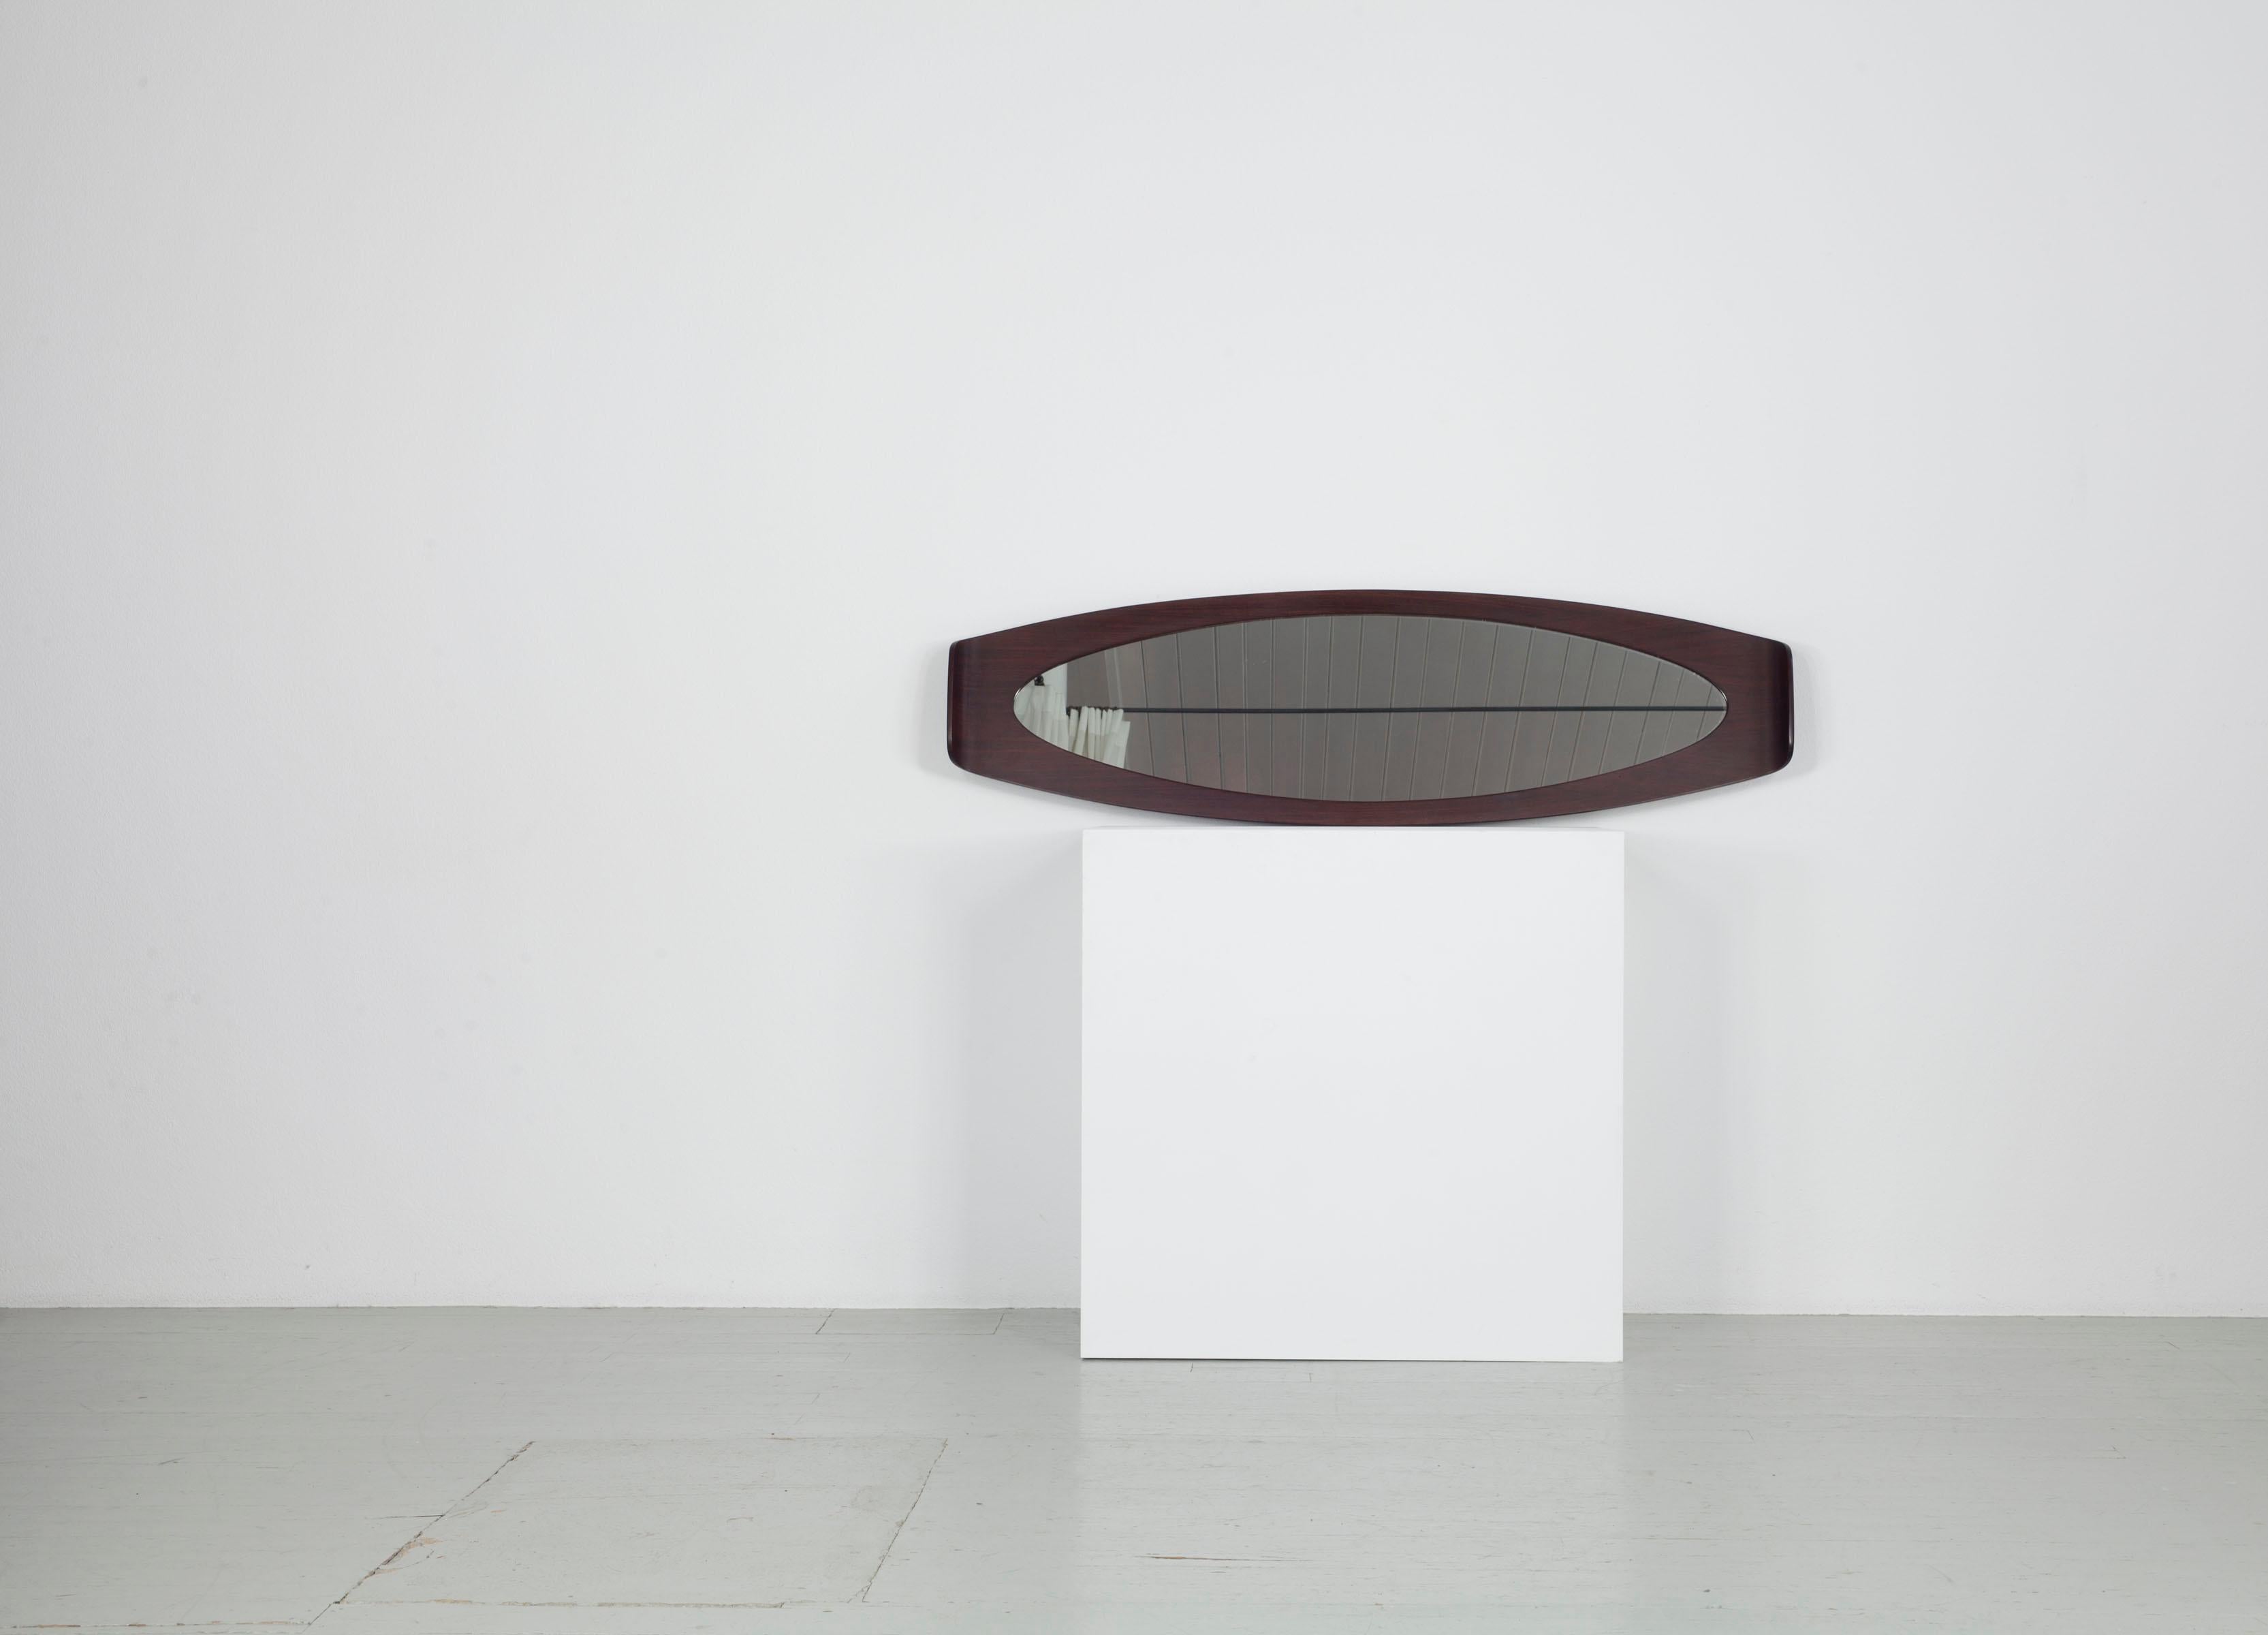 Dieser italienische, langgestreckte, ovale Spiegel stammt aus den 60er Jahren. Es wurde von Franco Campo und Carlo Graffi entworfen.  Der Spiegel hat eine ganz besondere Form, die ovale Länge des dunkel gebeizten Palisanderholzes ist an beiden Enden